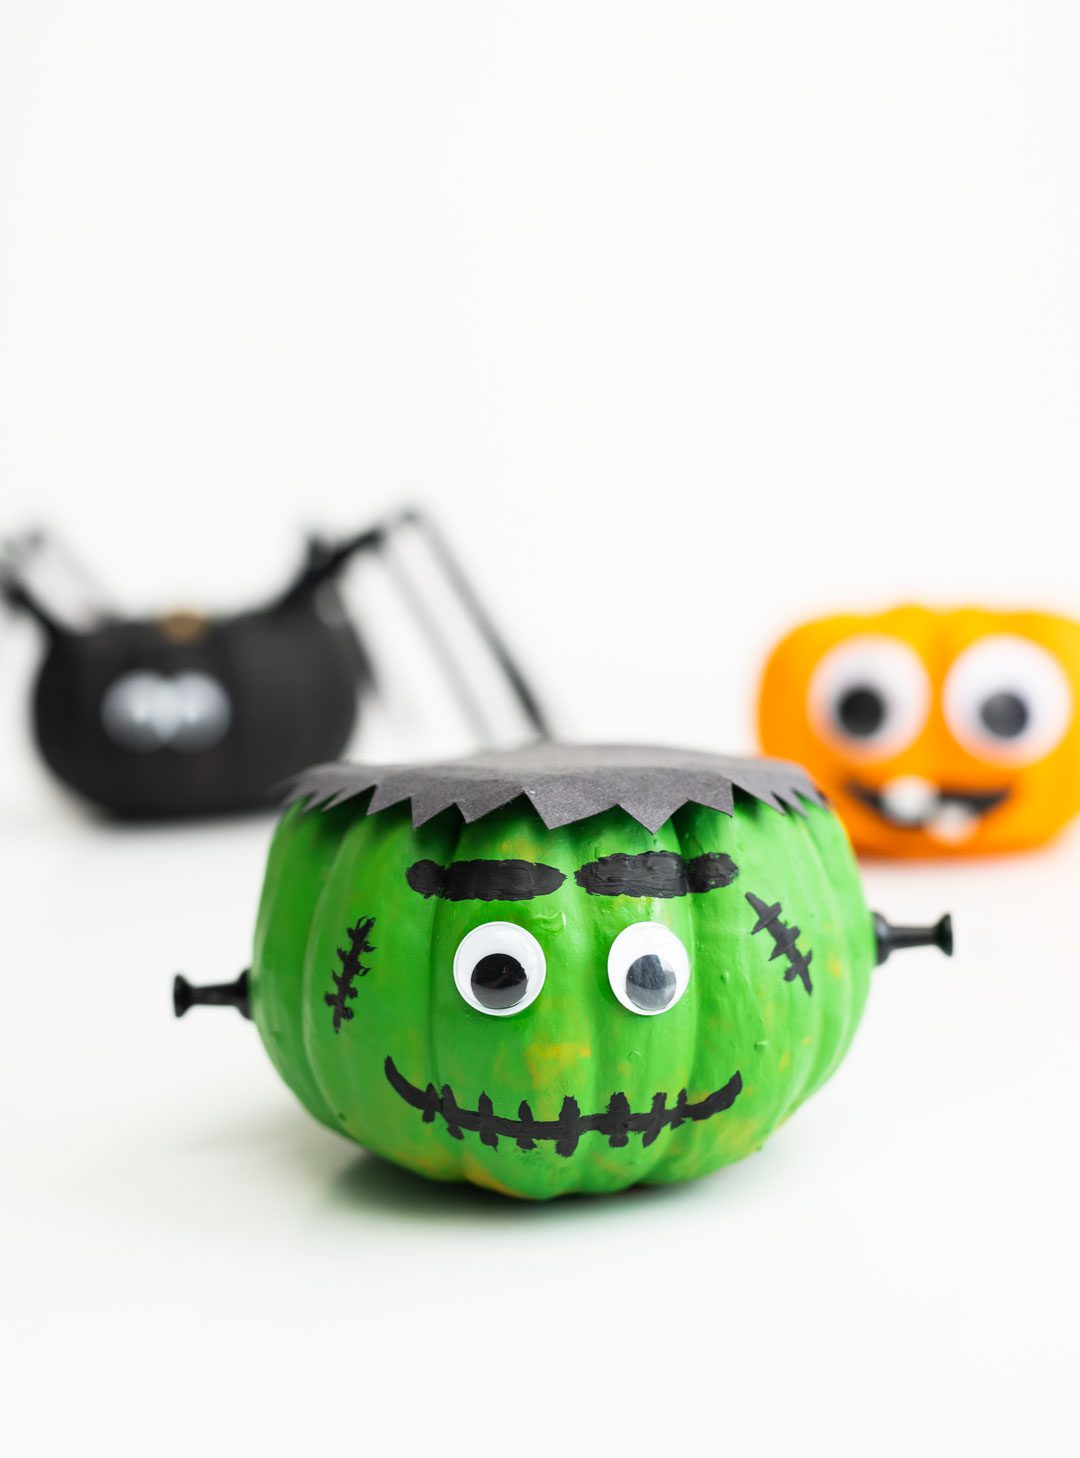 Frankenstein mini pumpkin, silly face pumpkin, spider pumpkin.